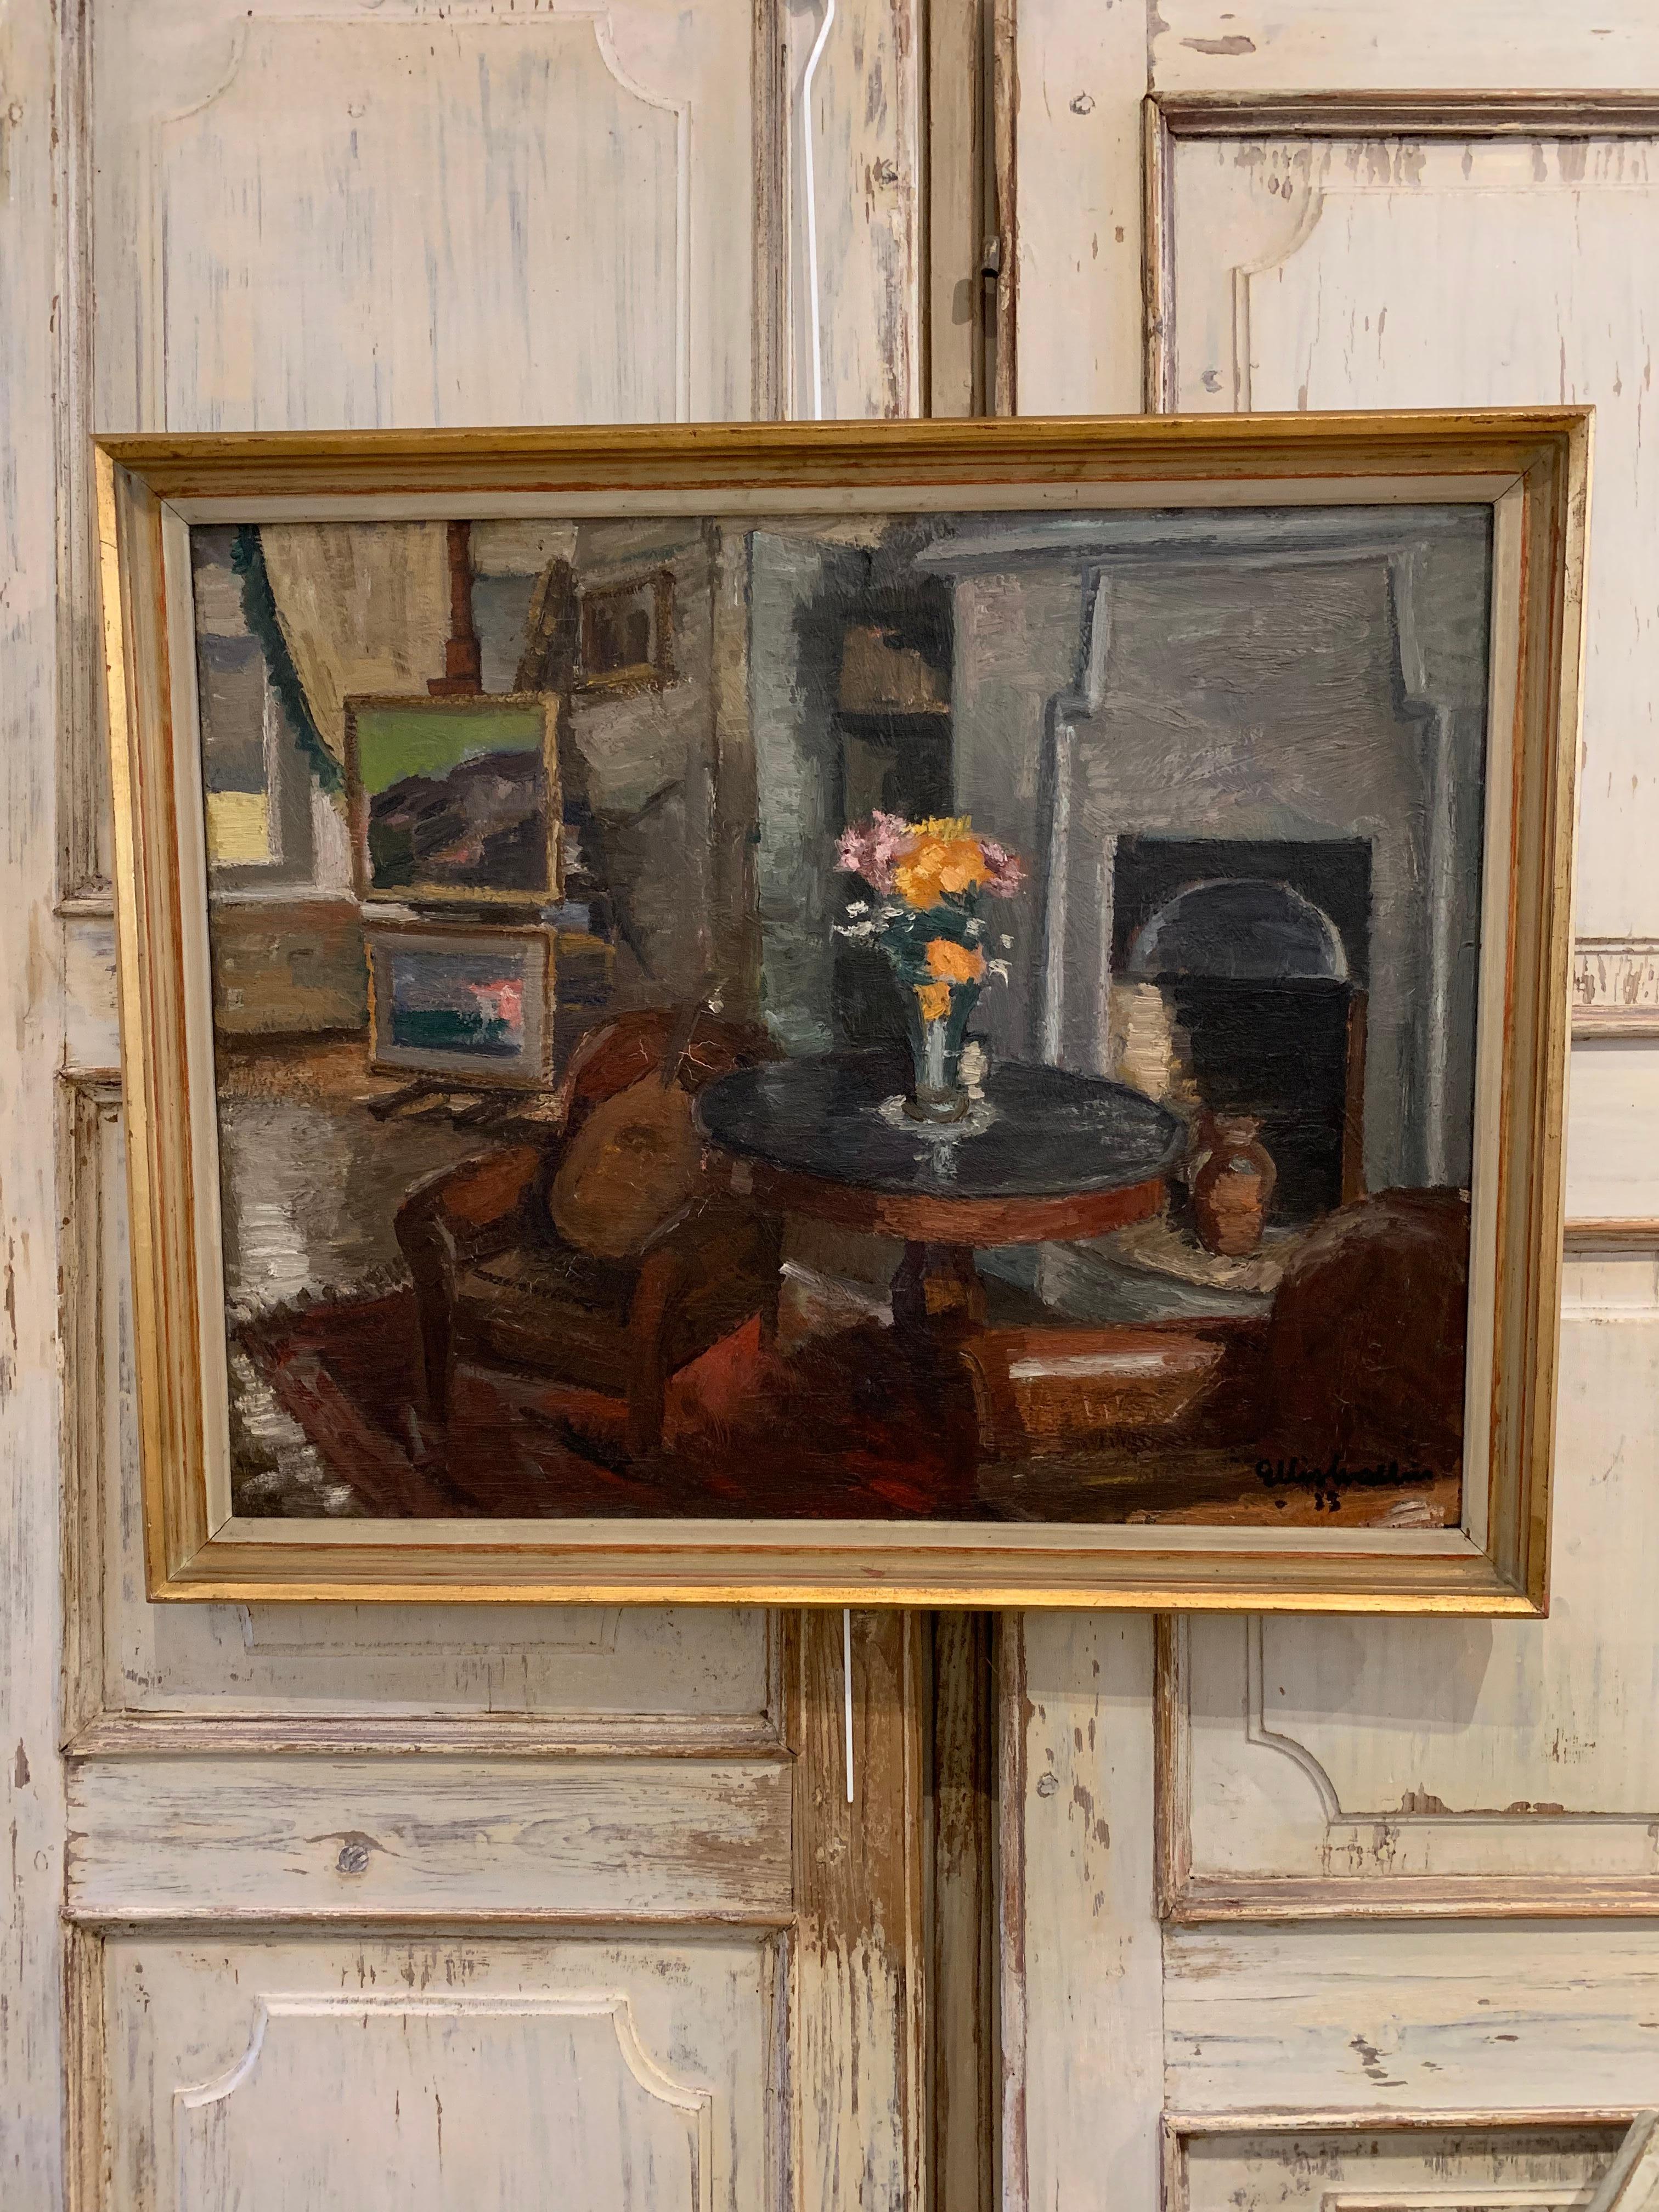 Peinte par l'artiste suédois Ellis Wallin, cette huile sur toile encadrée représente une charmante étude d'intérieur.
La pièce au premier plan présente une scène au coin du feu, une paire de chaises en cuir confortables, un instrument à cordes posé